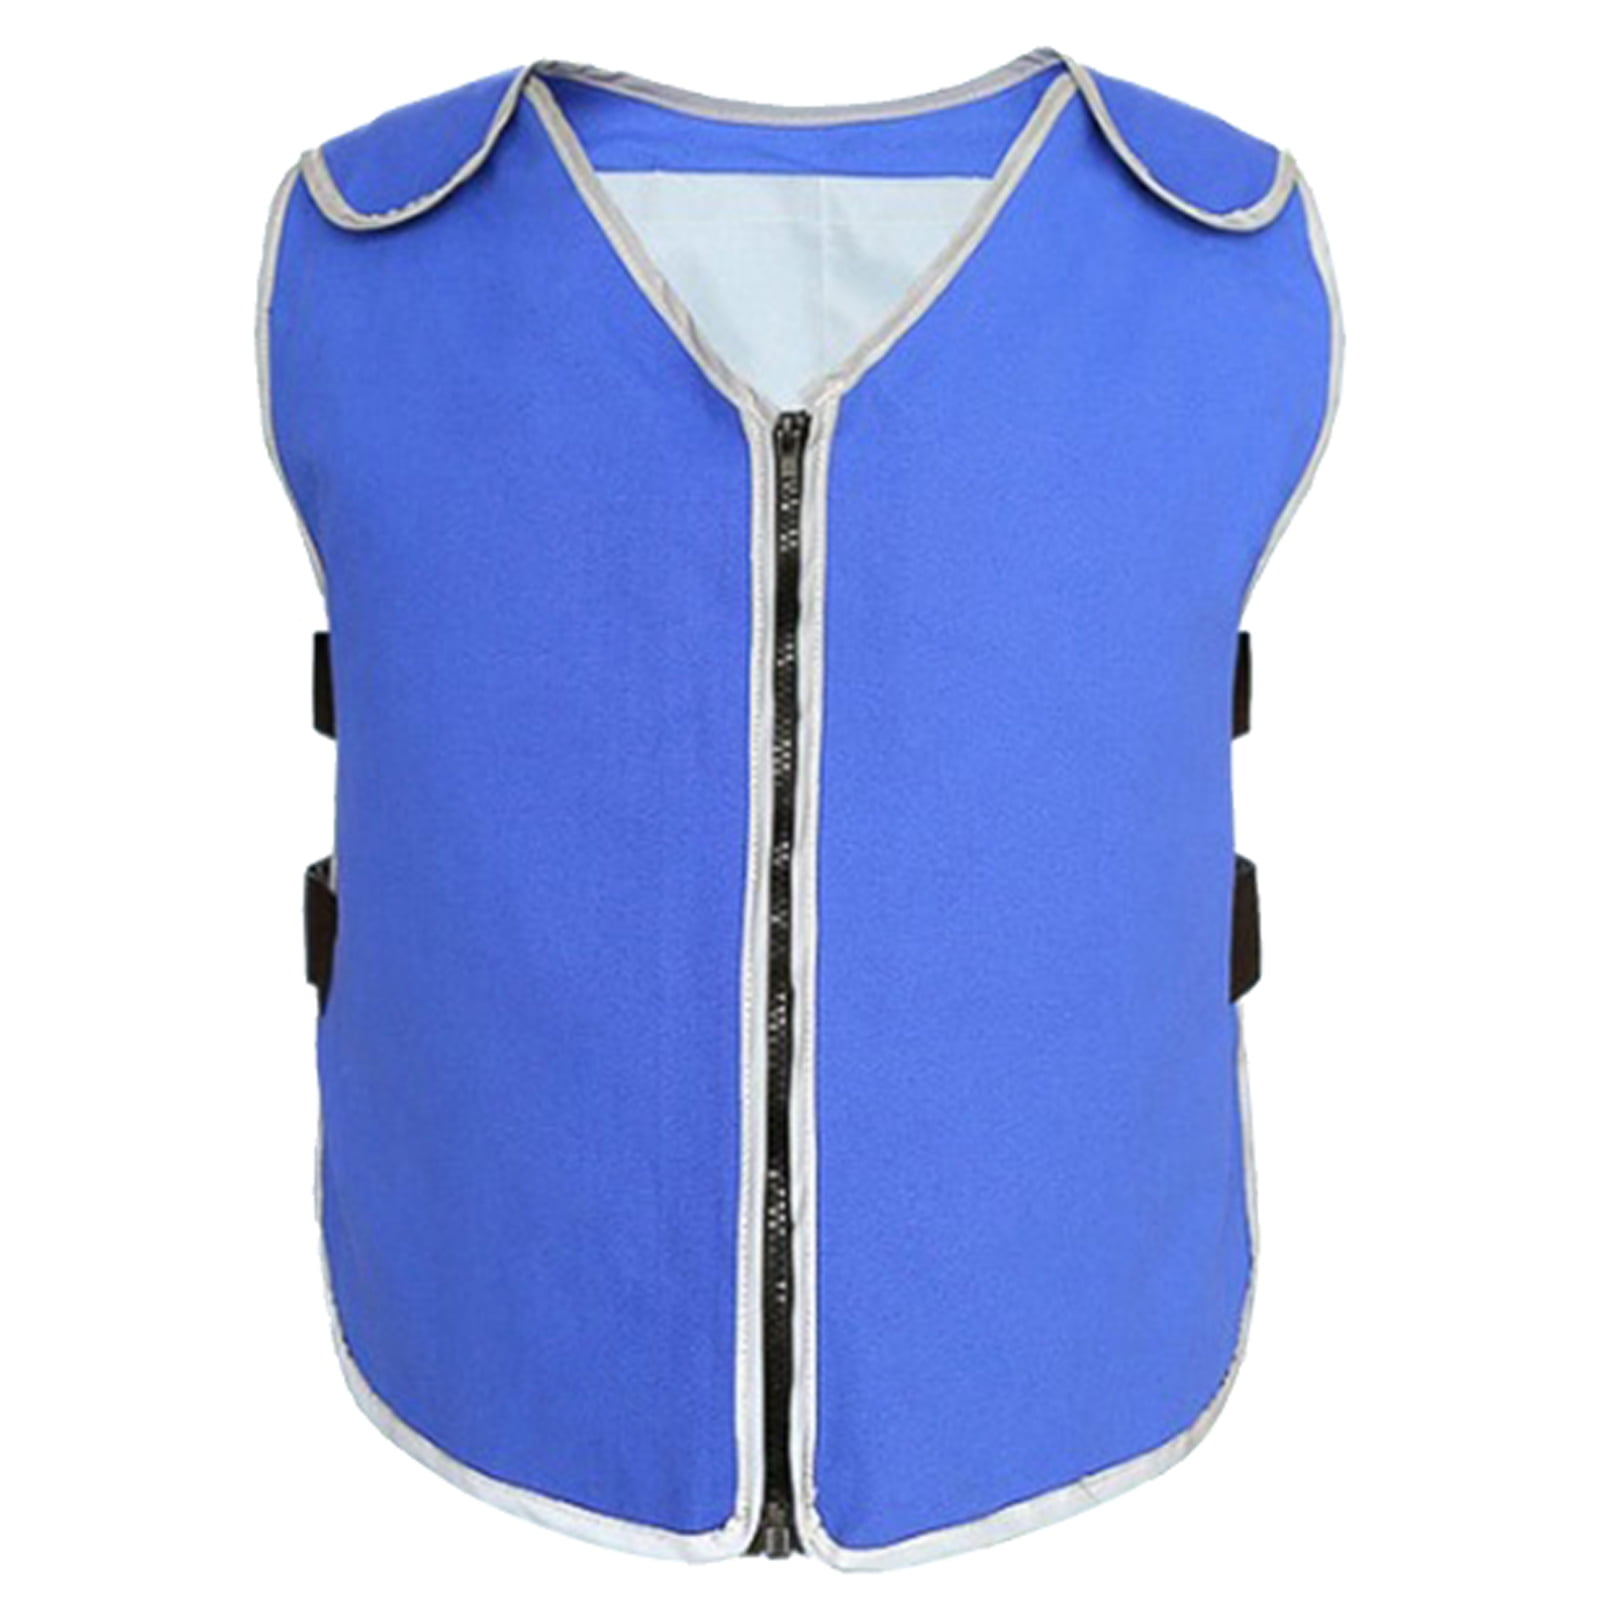 At bidrage Reklame Afvige Summer Cooling Vest With Ice Packs Polyester Breathable Canvas For Men  Women - Walmart.com